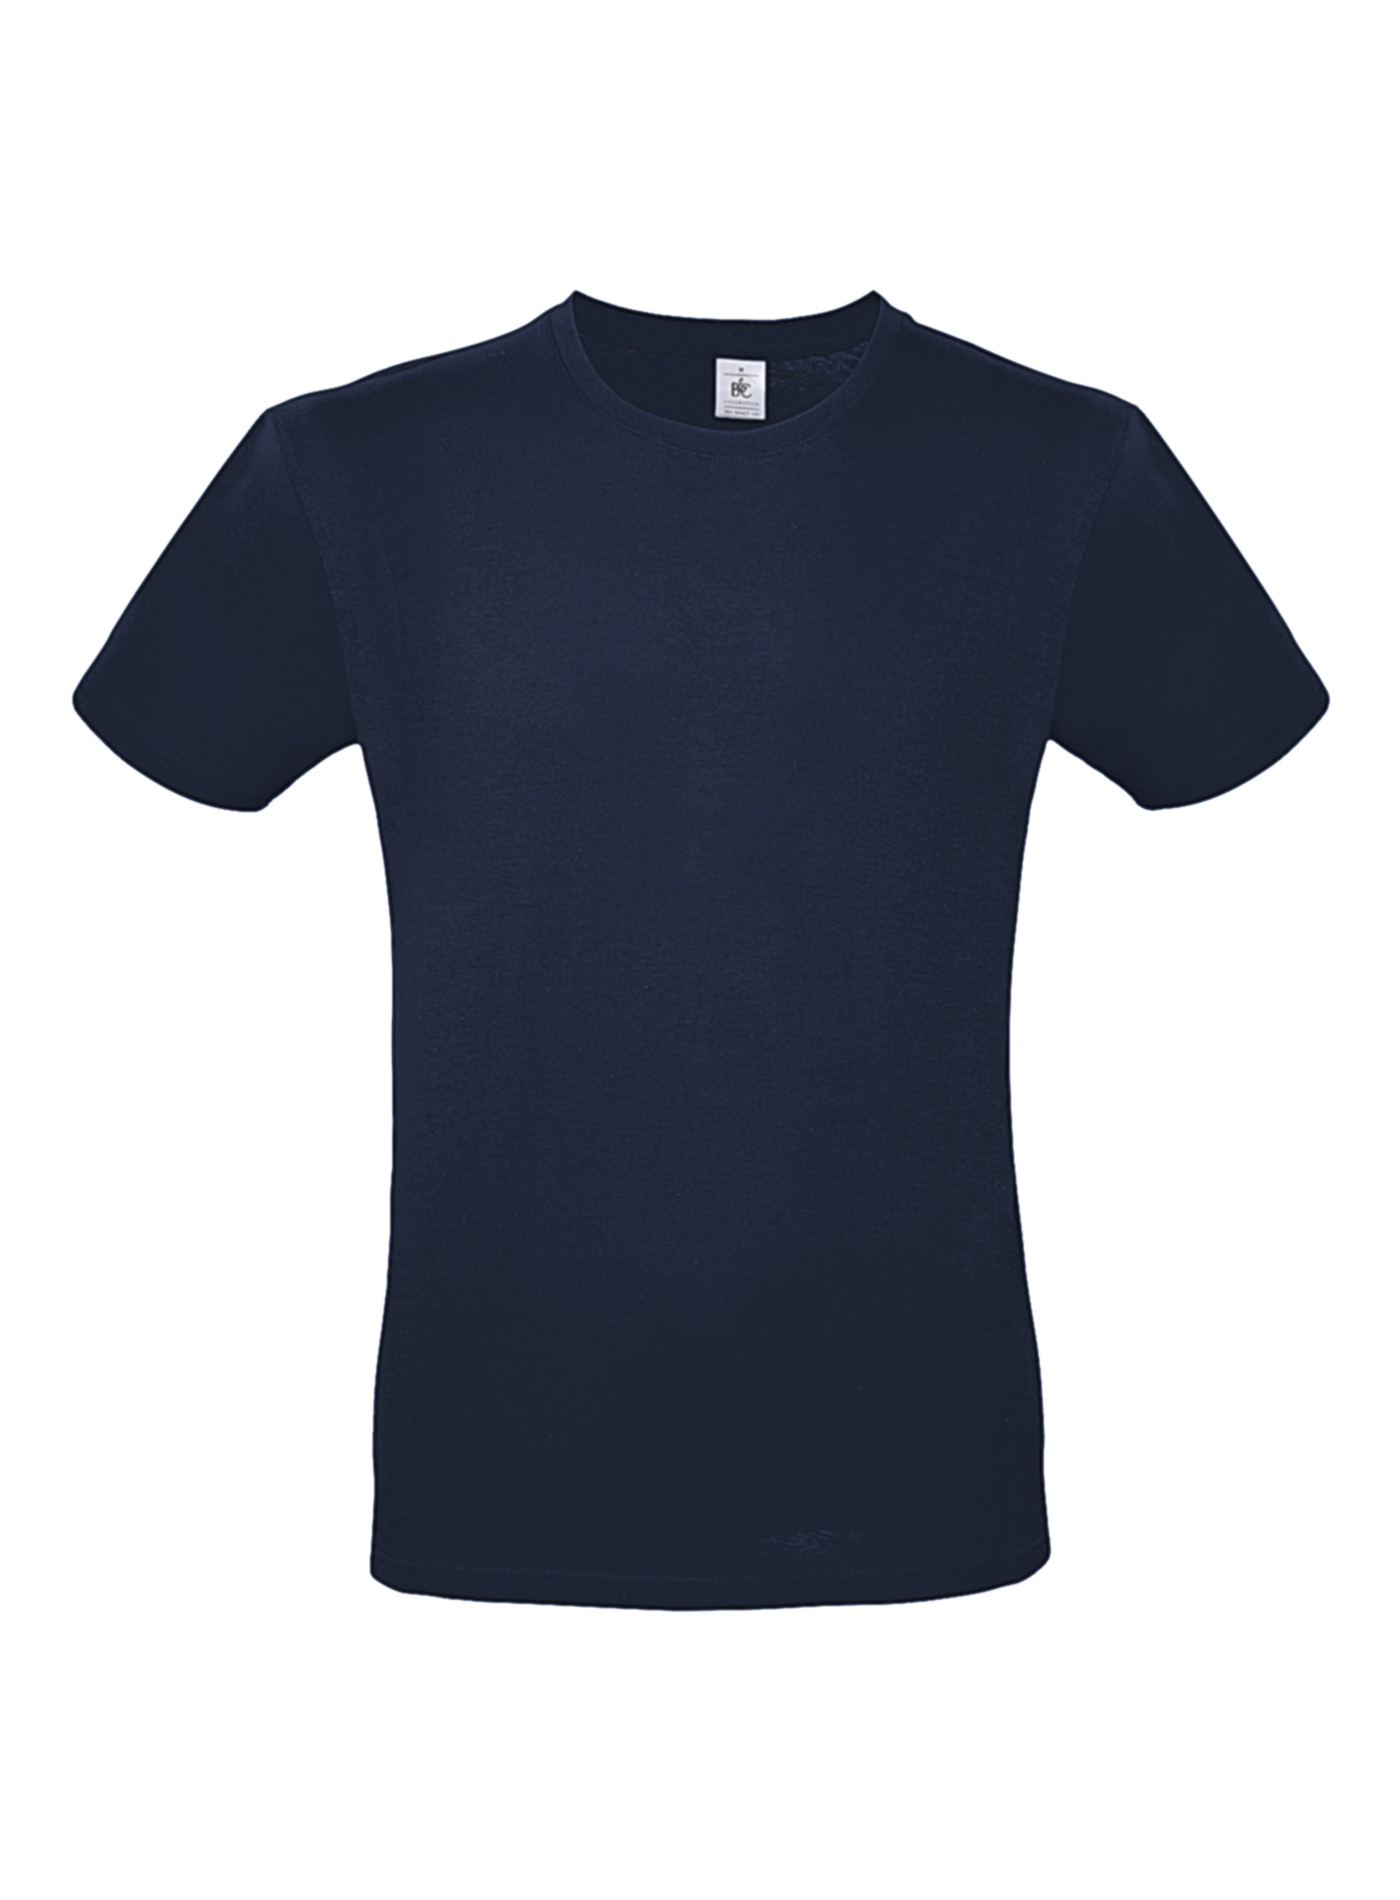 Pánské tričko B&C - Námořní modrá L